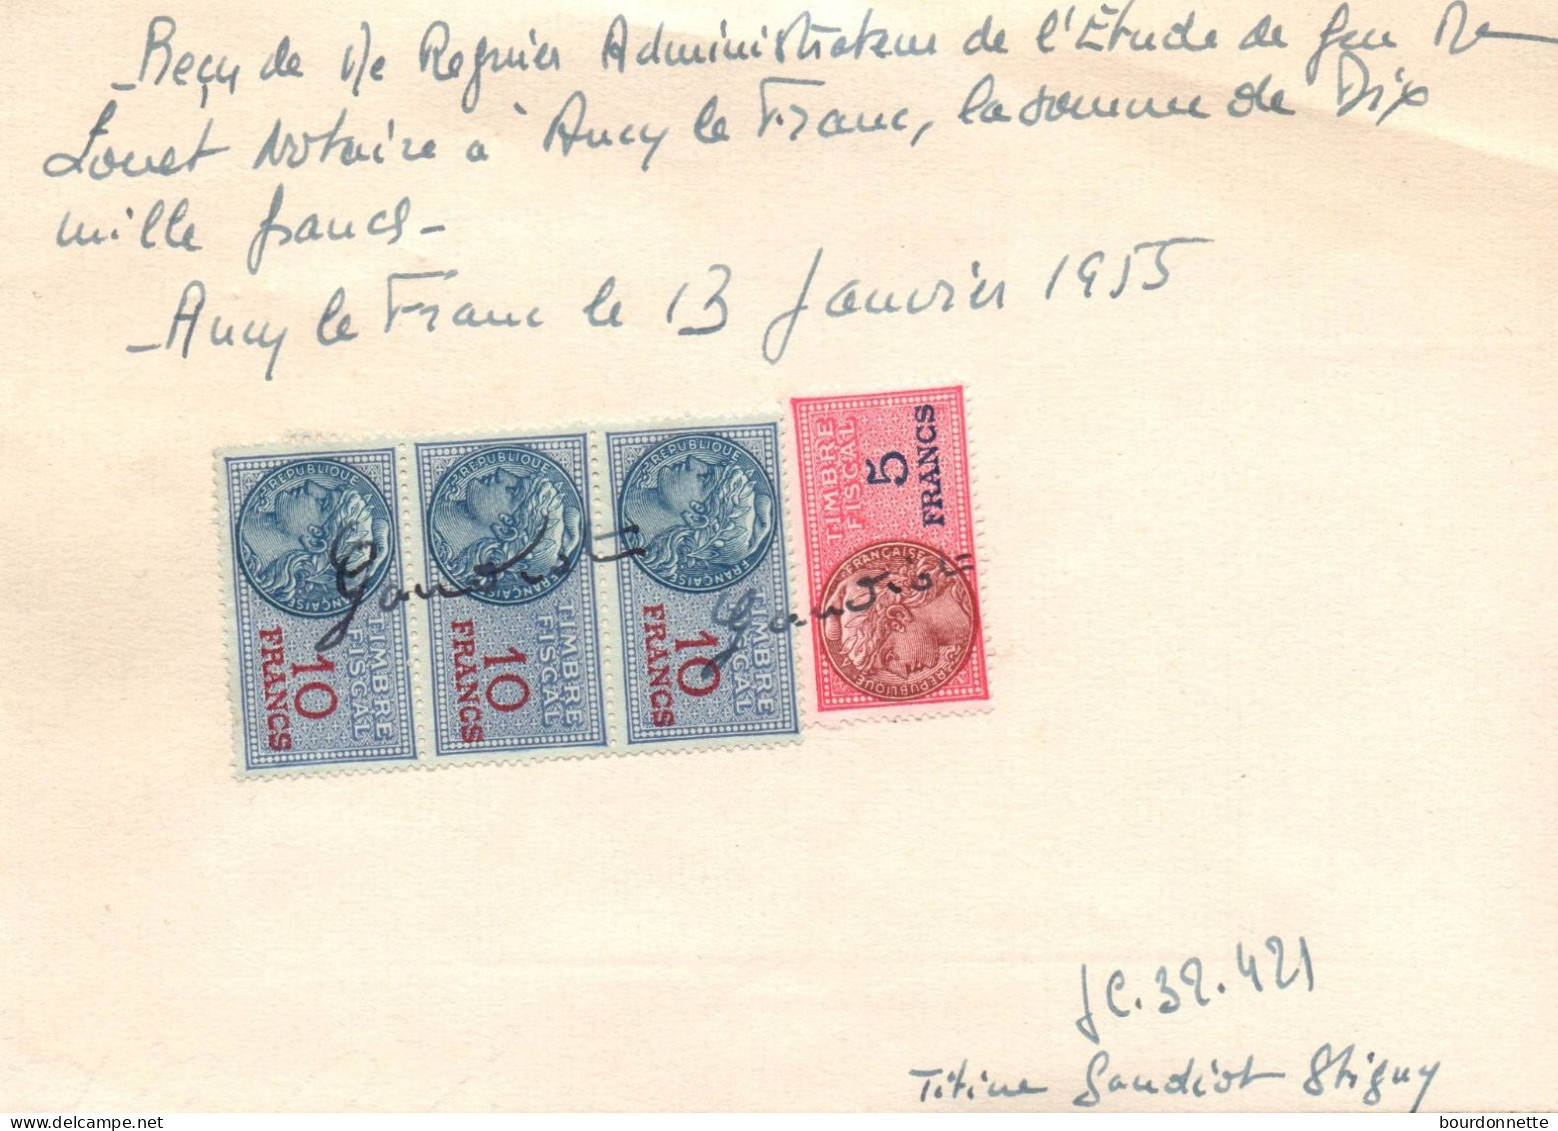 TIMBRES FISCAUX Sur Documents Ancy Le Franc Yonne 1955 STIGNY - Lettres & Documents